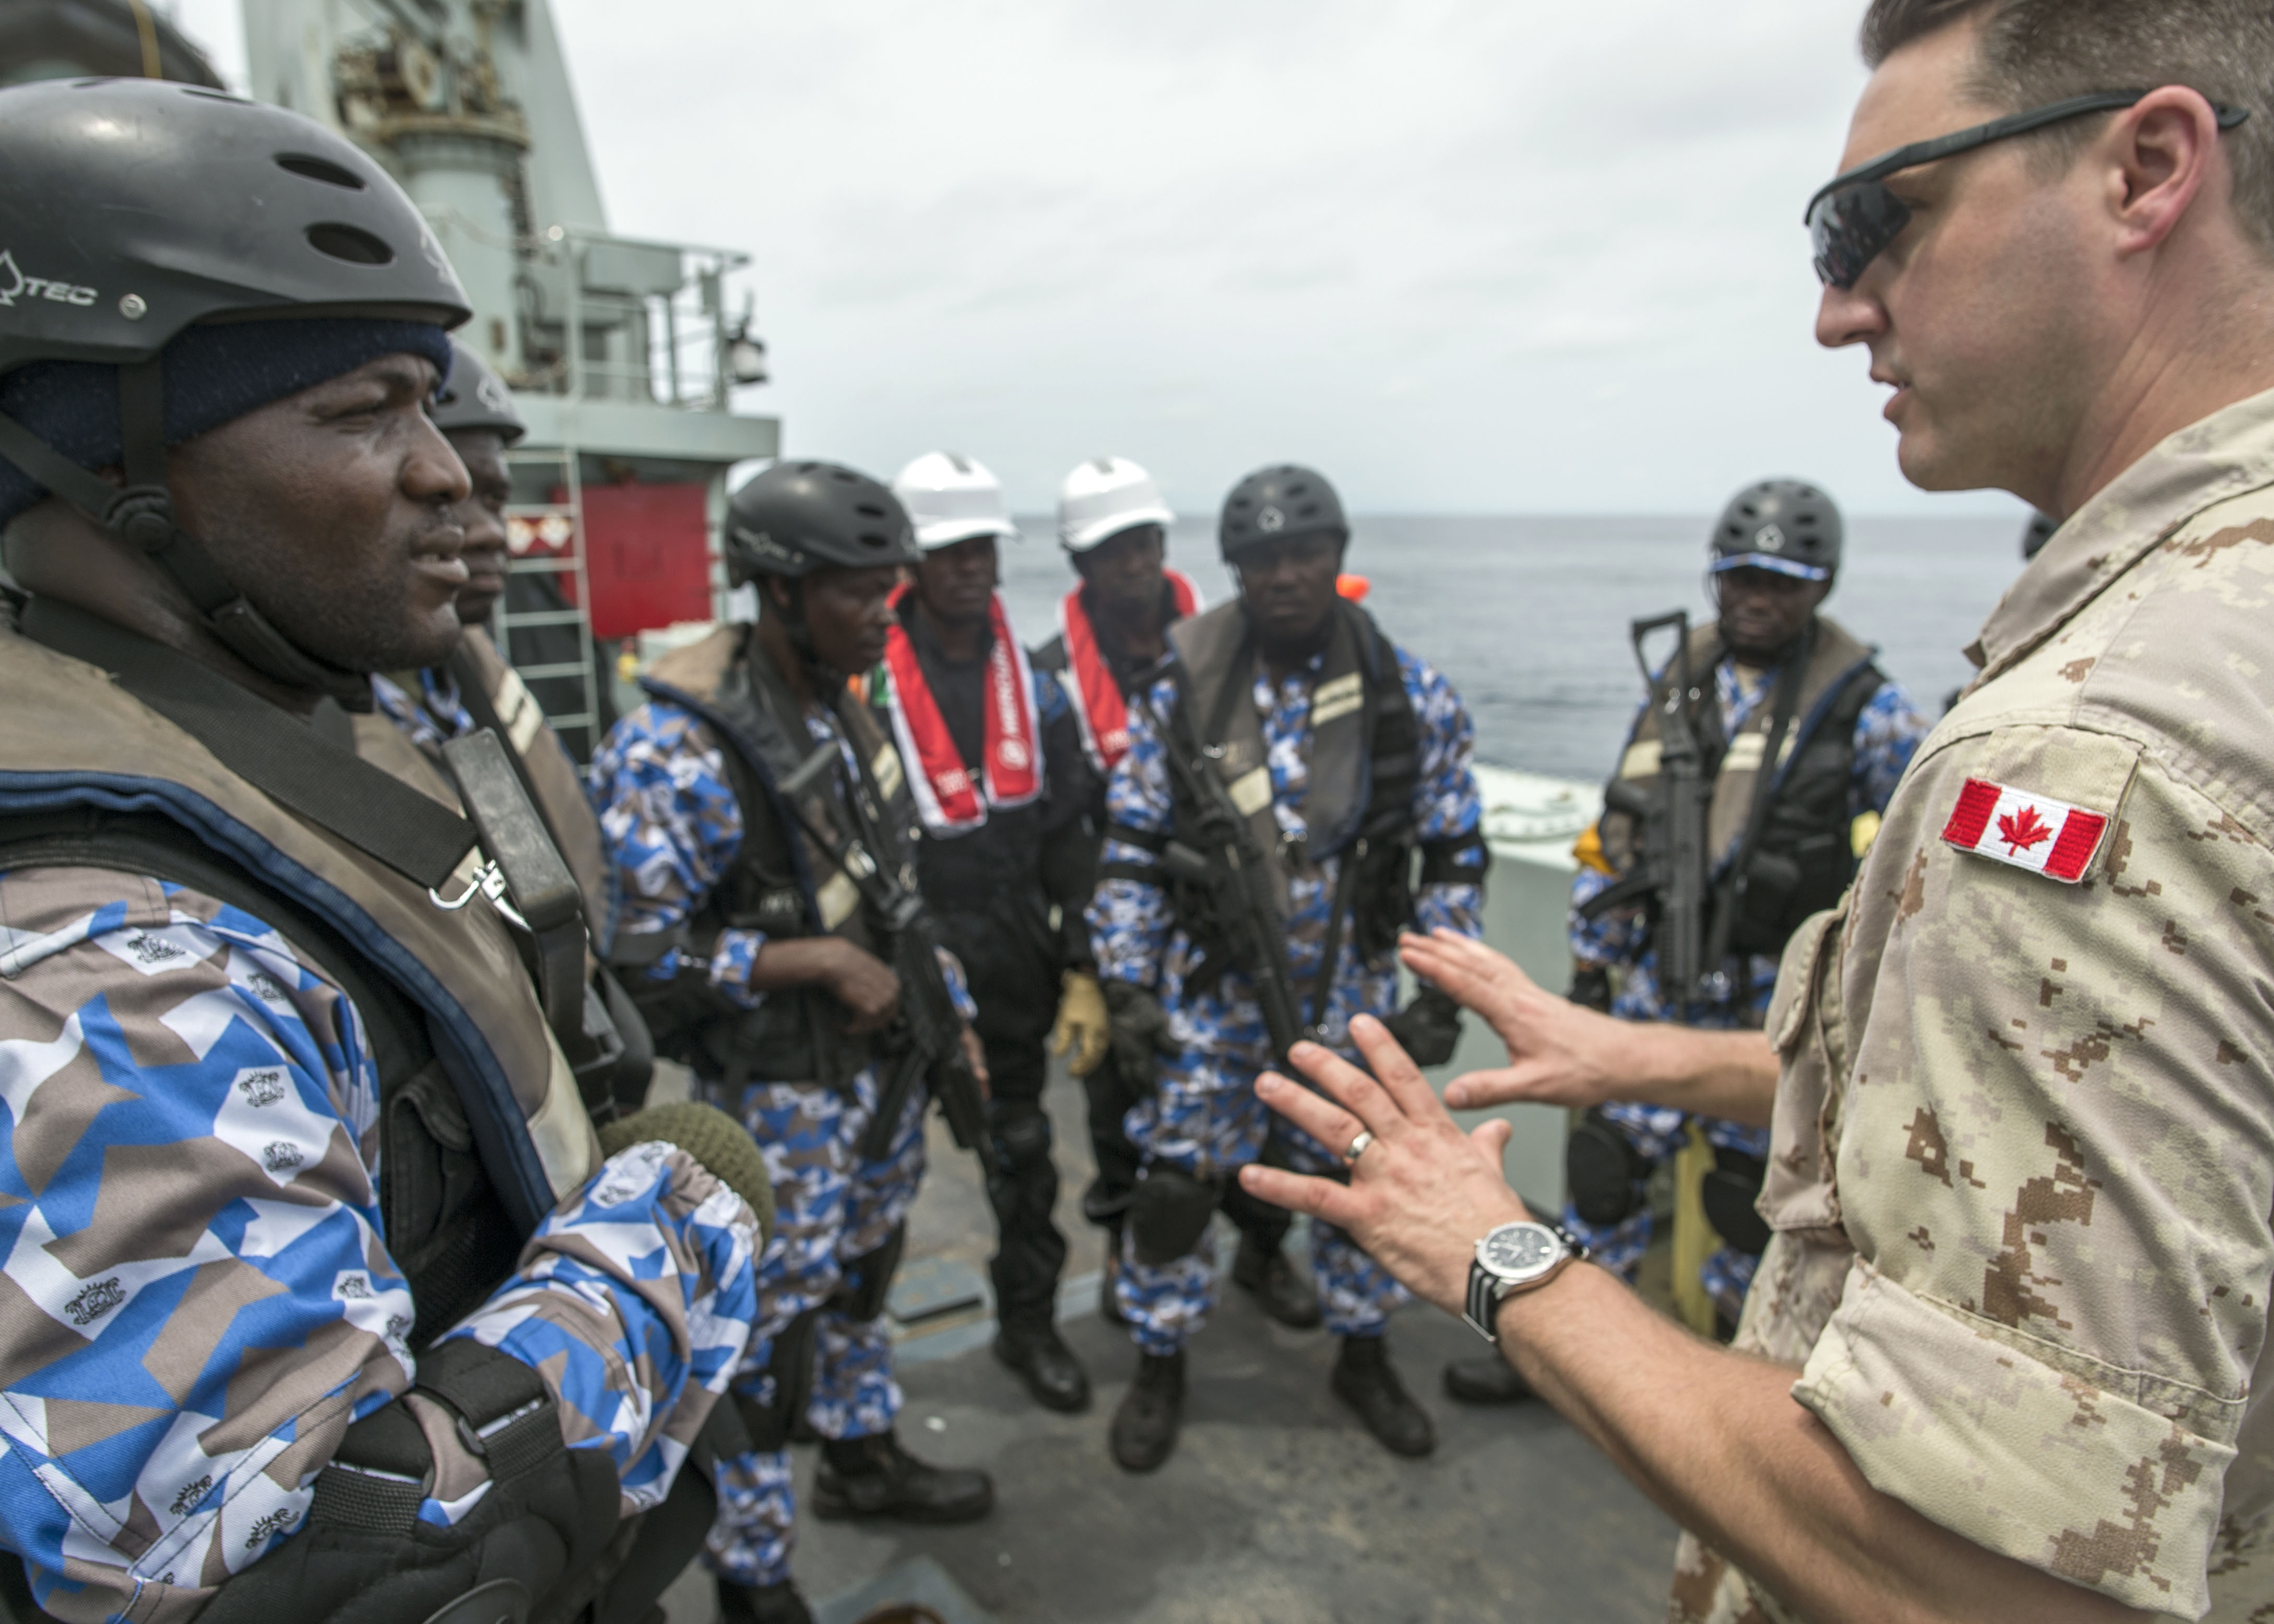 25 mars 2018. Le capitaine de corvette Drew Foran, agent de liaison au Centre des opérations maritimes en Côte d’Ivoire, discute avec les membres de l’équipe d’arraisonnement de la Côte d’Ivoire dans le cadre de l’exercice naval OBANGAME EXPRESS, à bord du NCSM KINGSTON, au cours de l’opération PROJECTION, au large de la côte de l’Afrique occidentale, le 25 mars 2018. Photo : Sgt Shilo Adamson, Quartier général du groupe du recrutement des Forces canadiennes, BFC Borden